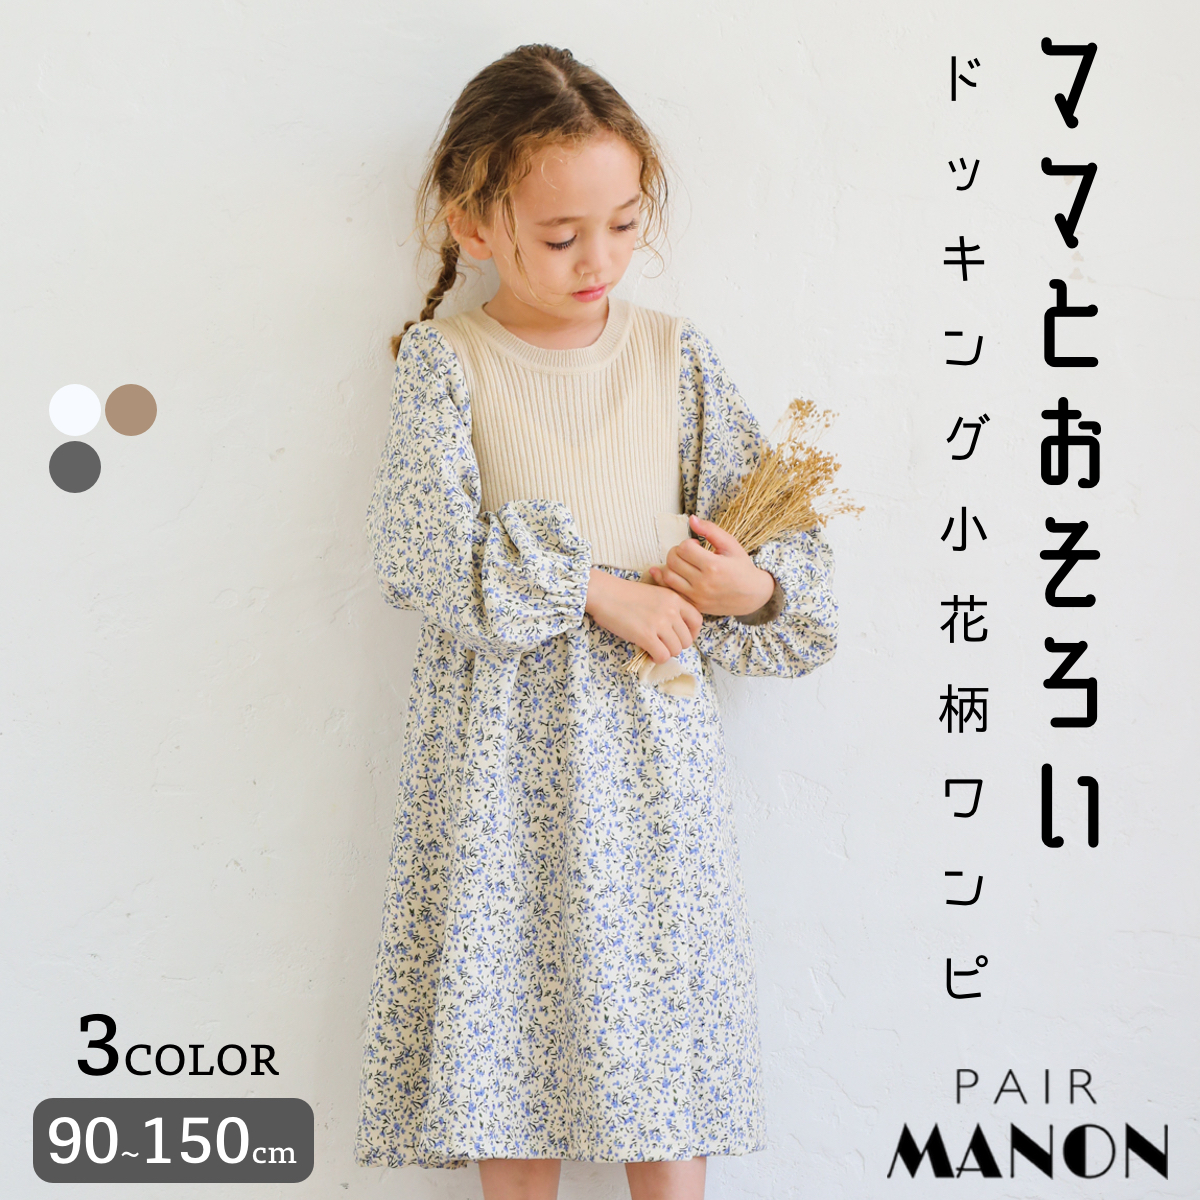 銀座本店 GU 女児 ワンピース 150 4d68a2bd 公式に取扱うファッション通販サイト -pn-batam.go.id